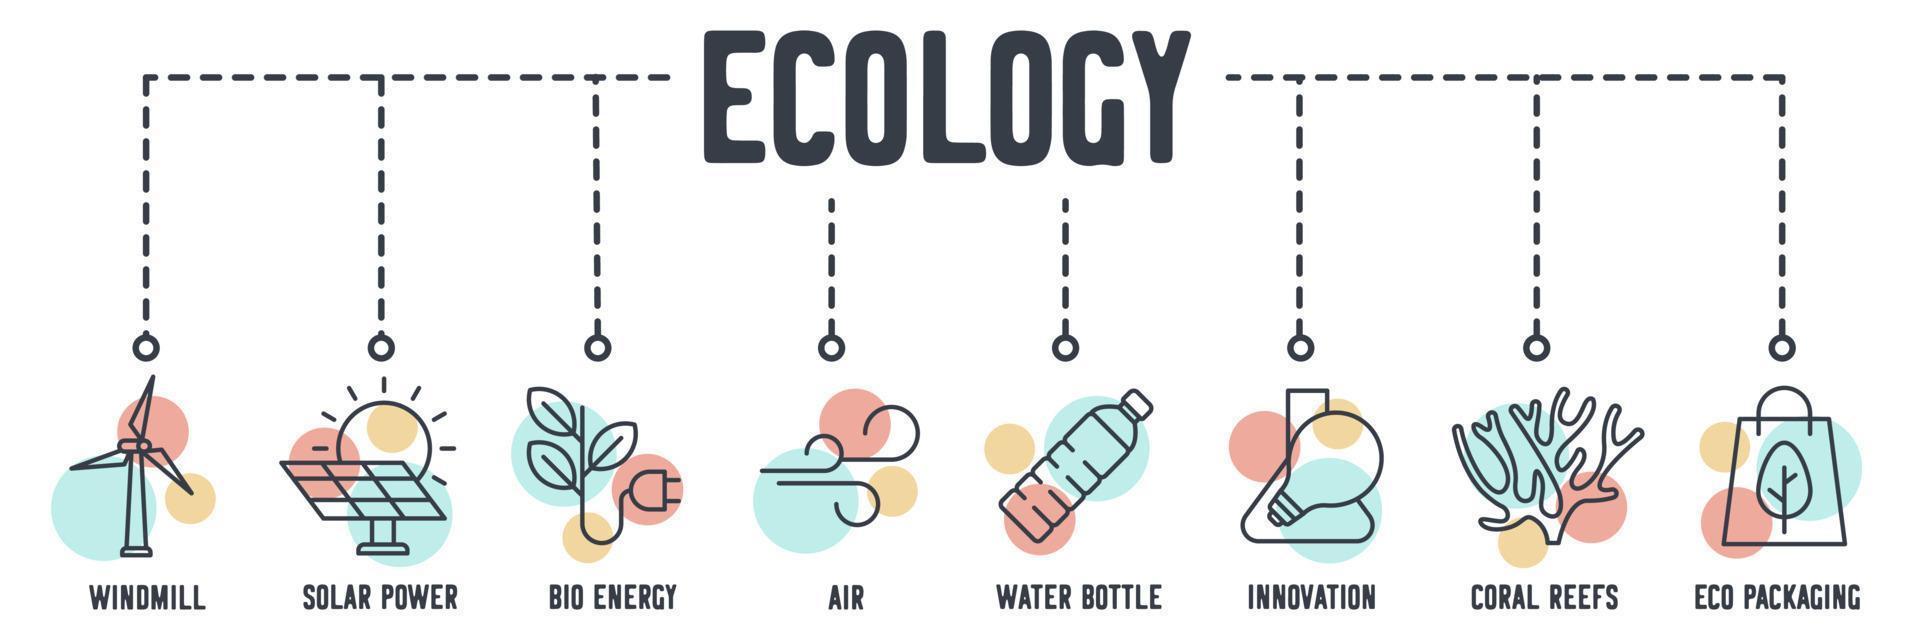 umweltfreundlich. Umweltökologie-Banner-Web-Symbol. windmühle, solarenergie, bioenergie, luft, wasserflasche, innovation, korallenriffe, öko-verpackungsvektorillustrationskonzept. vektor